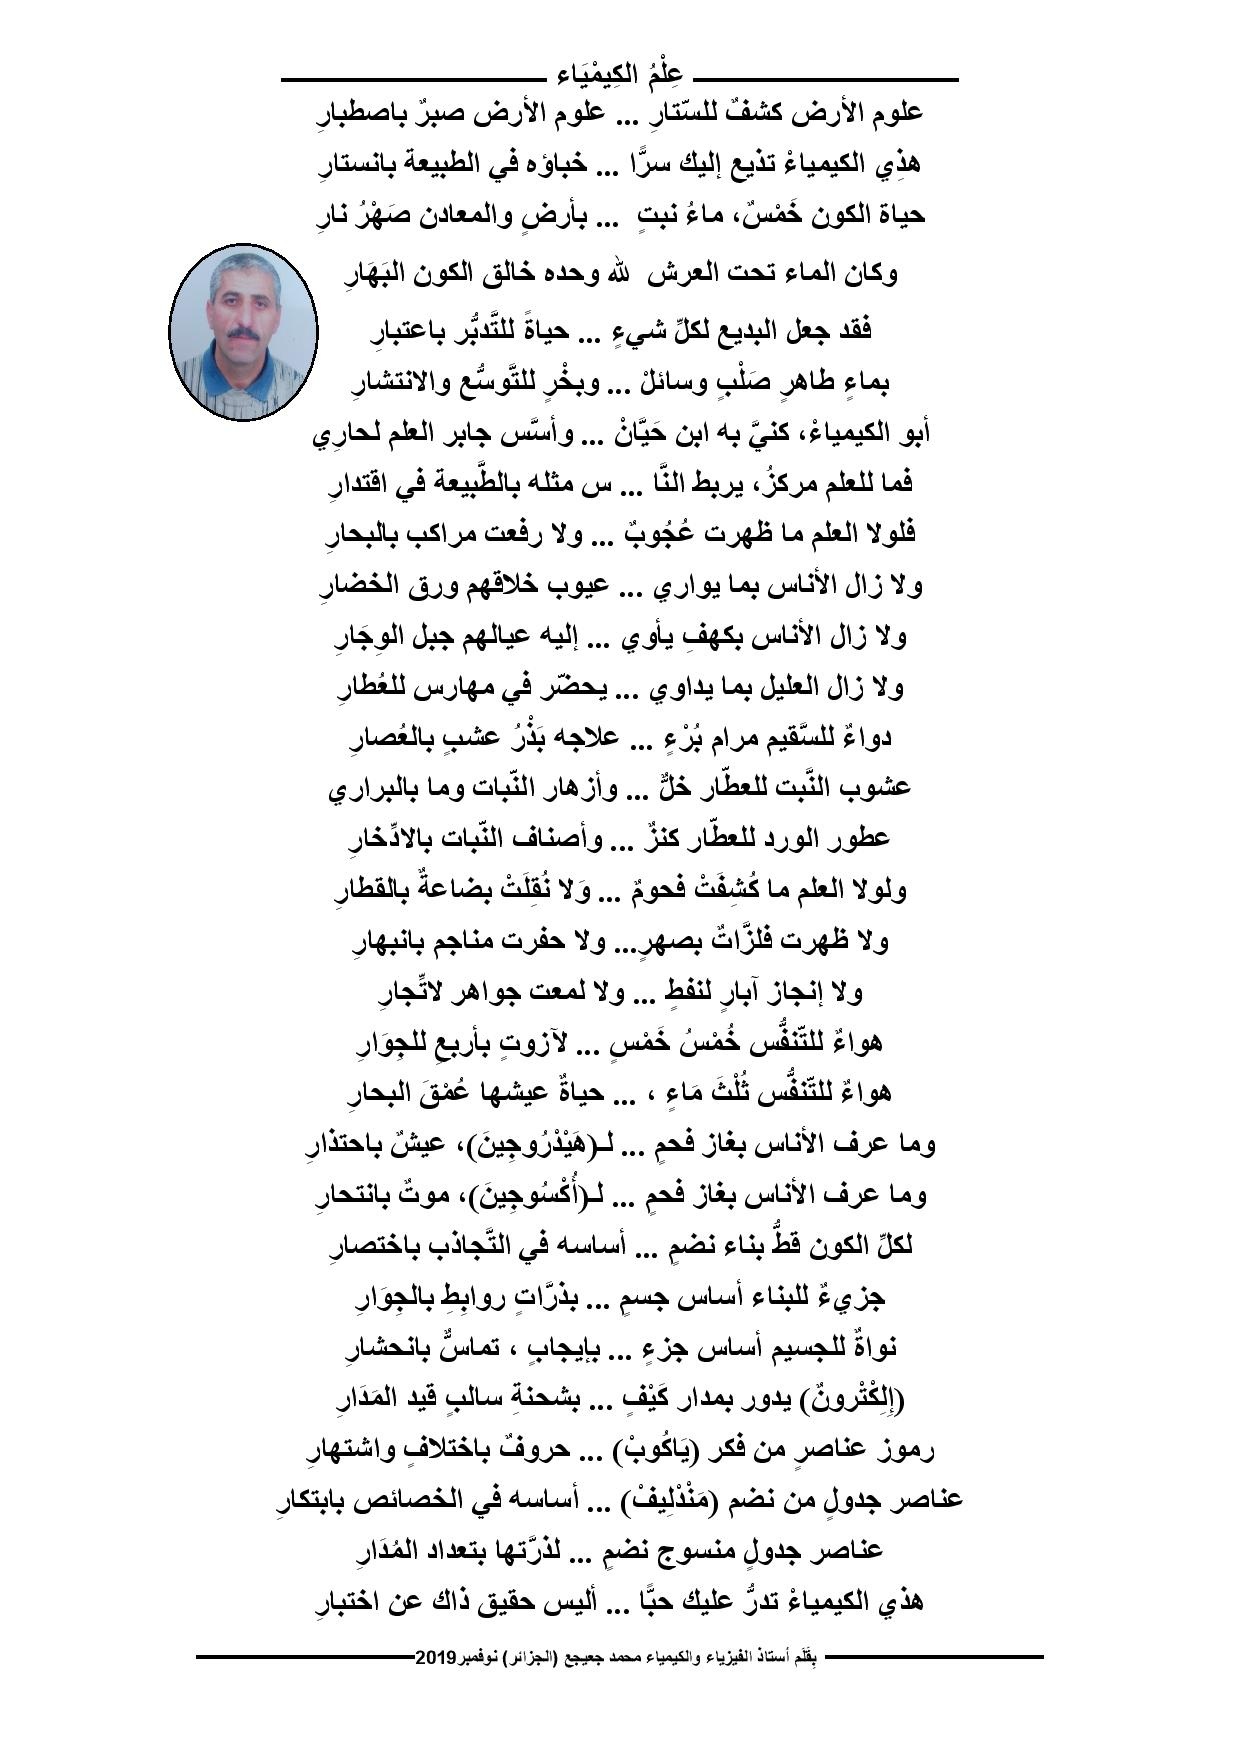 قصيدة "علم الكيمياء" بقلم "محمد جعيجع" أستاذ فيزياء وكيمياء 30أكتوبر2019 P_1444hwkv21